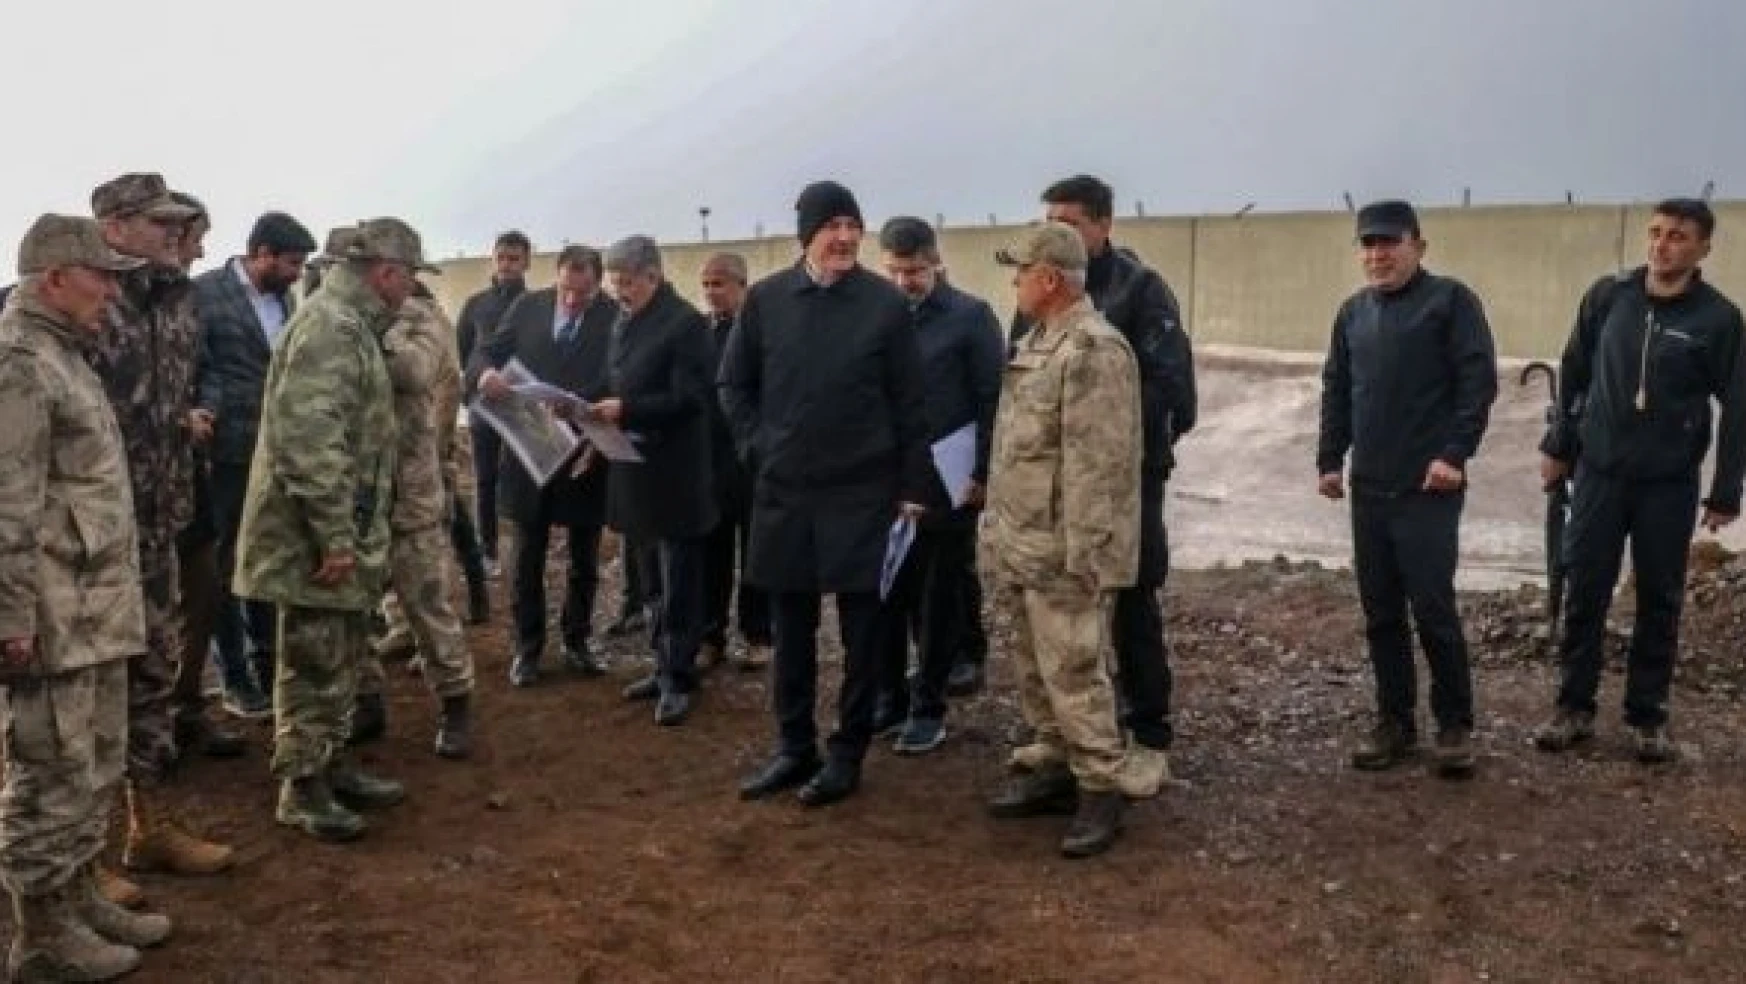 İçişleri Bakanı Soylu, Türkiye-İran sınırındaki güvenlik duvarı çalışmalarını inceledi